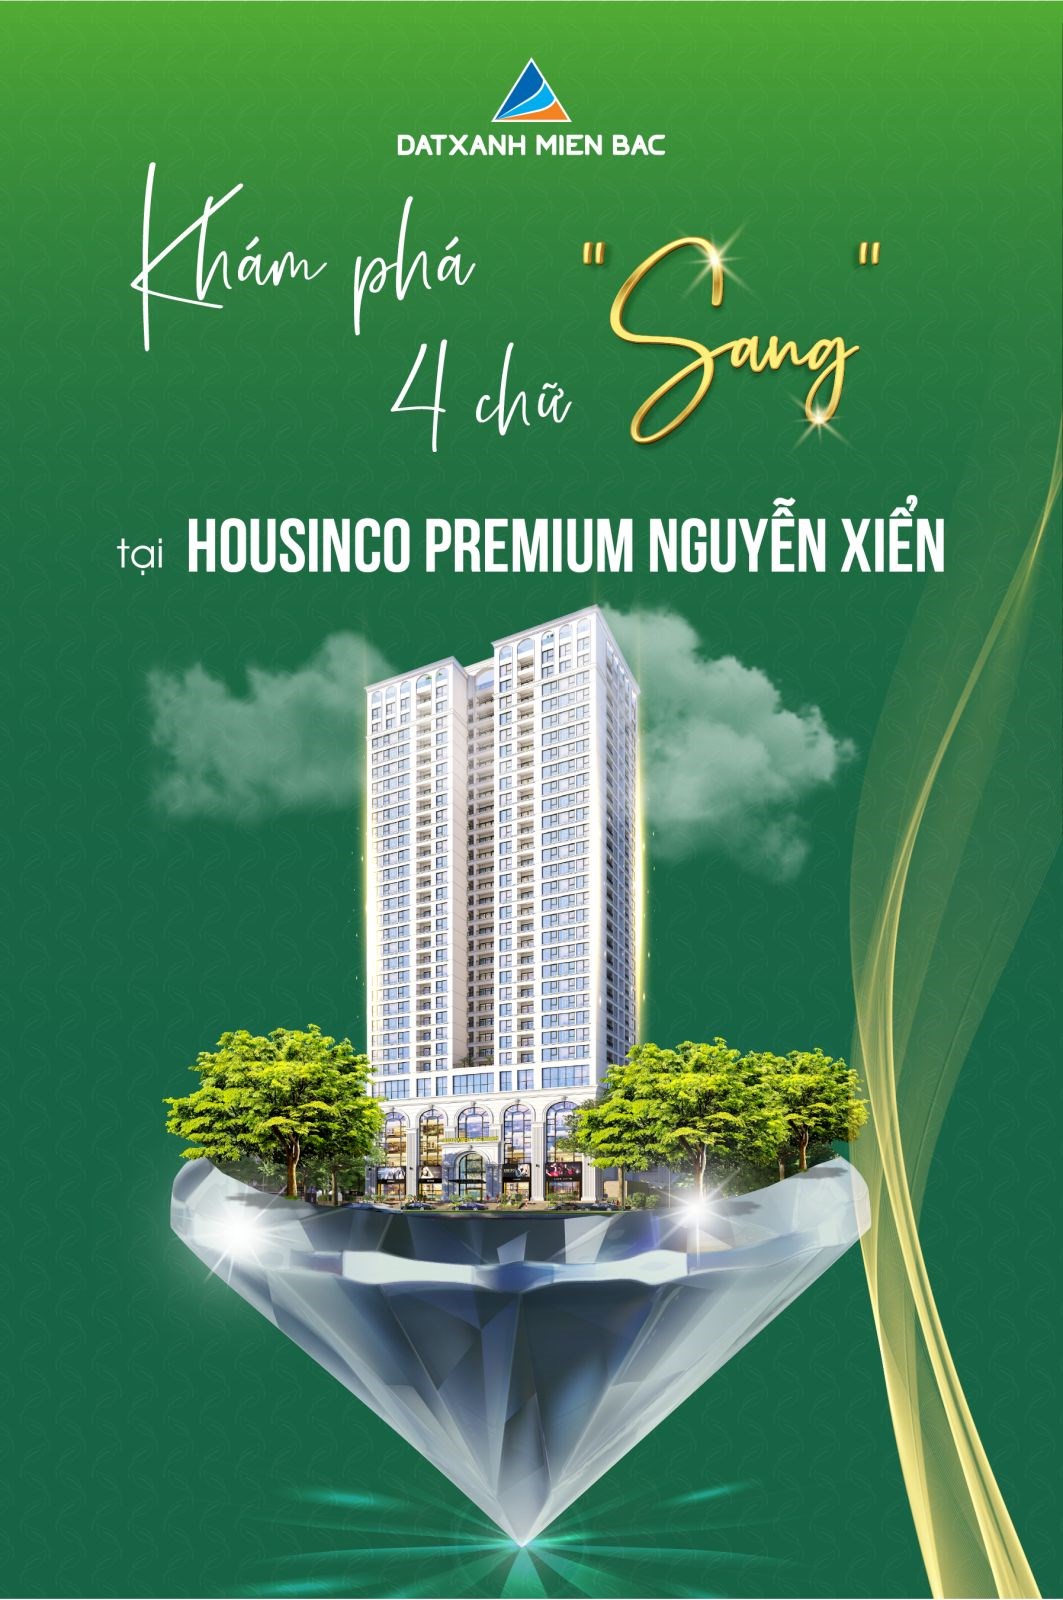 Housinco_Premium - Khu căn hộ nhiều yếu tố “SANG” nhất trên trục